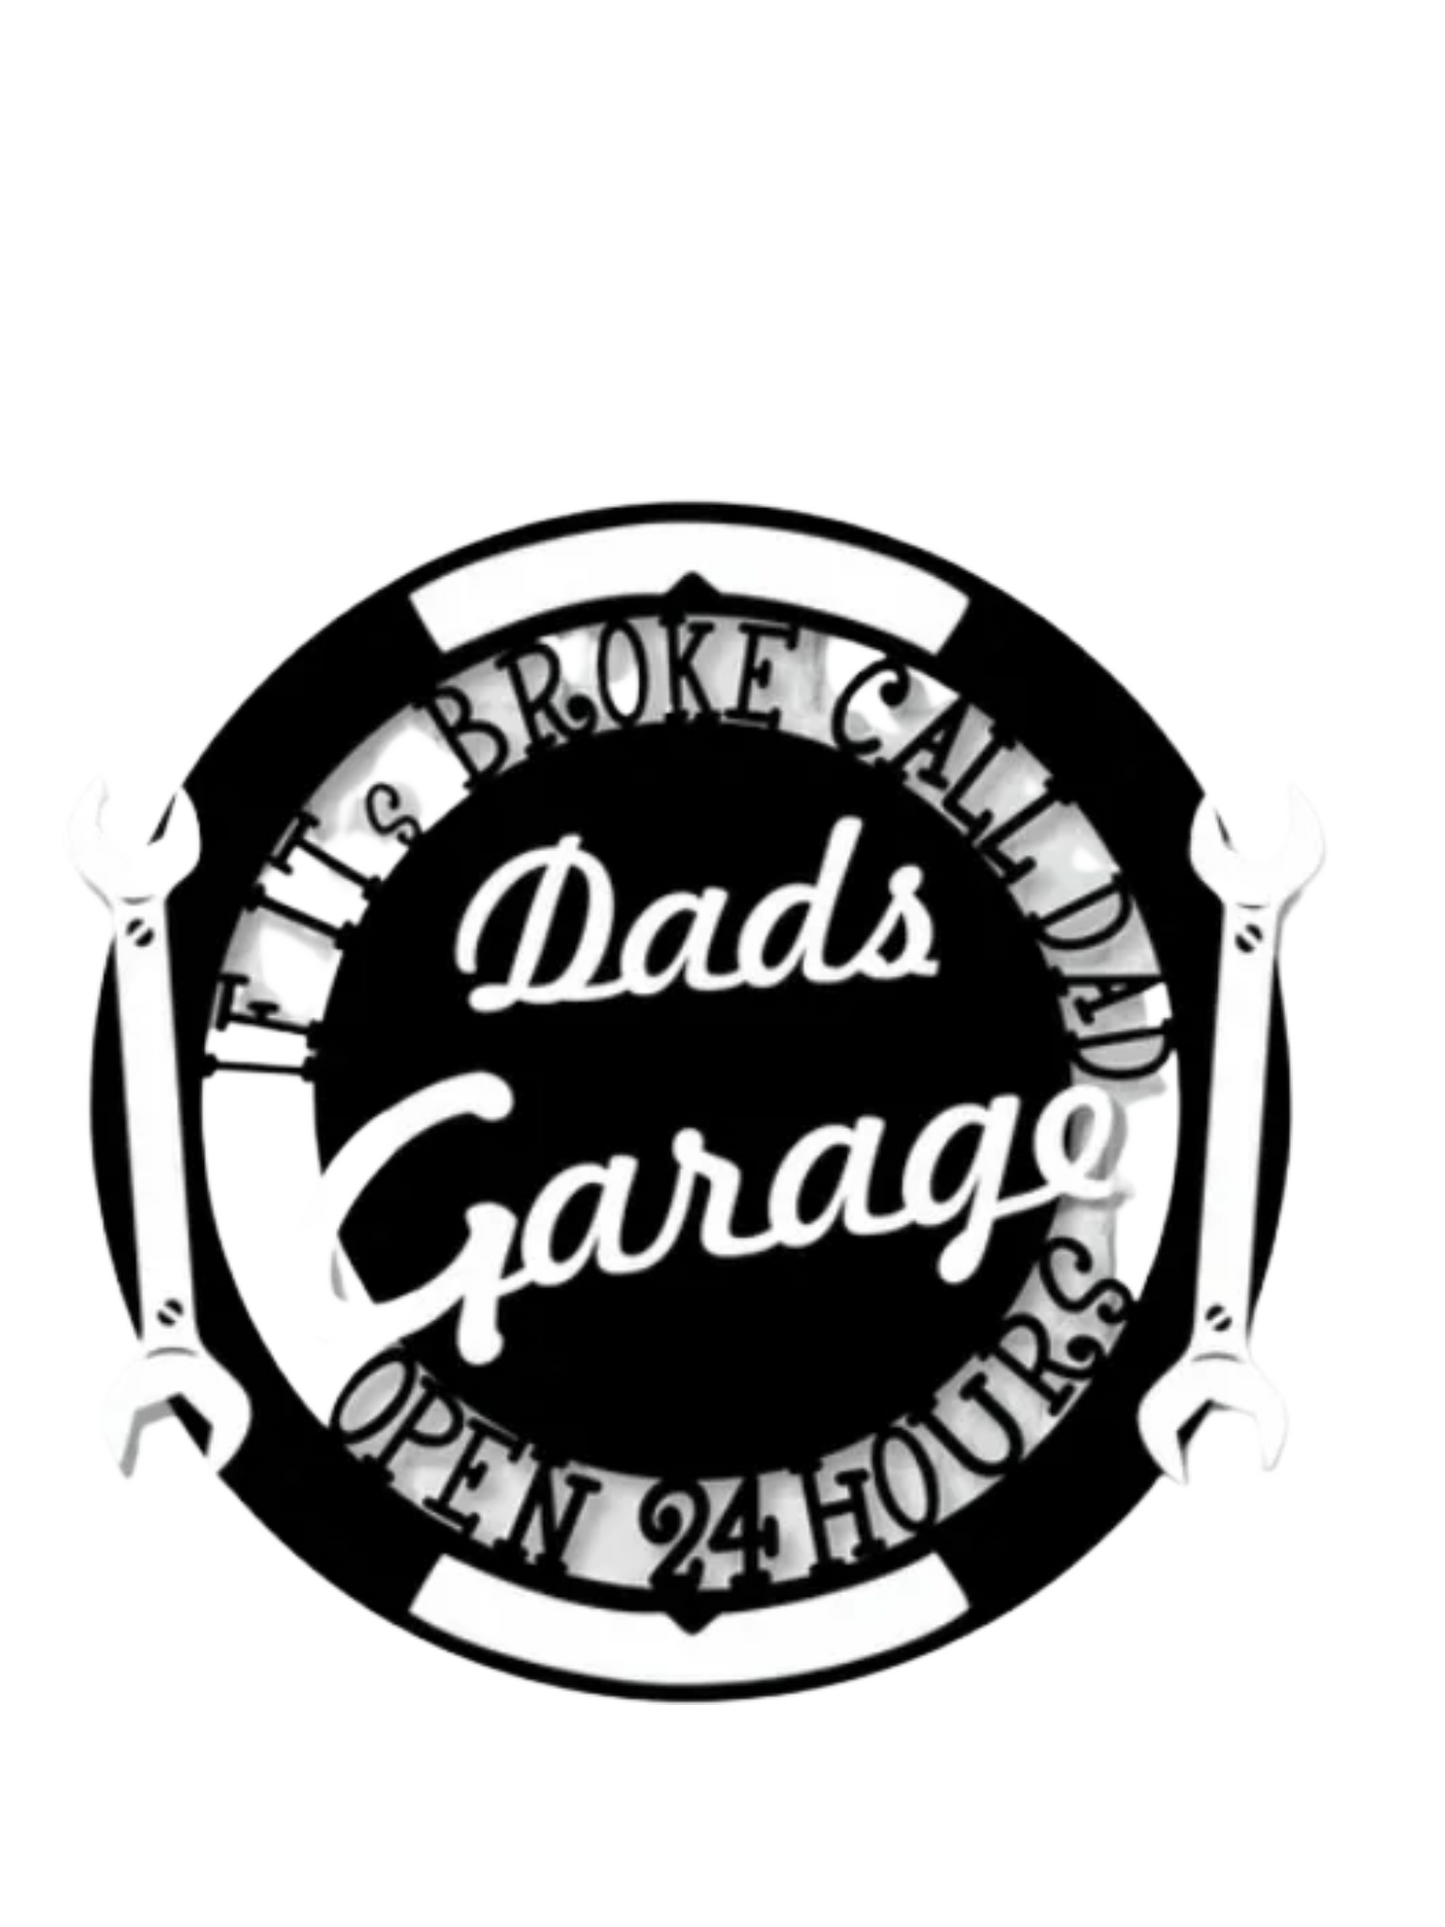 Dad's Garage Sign